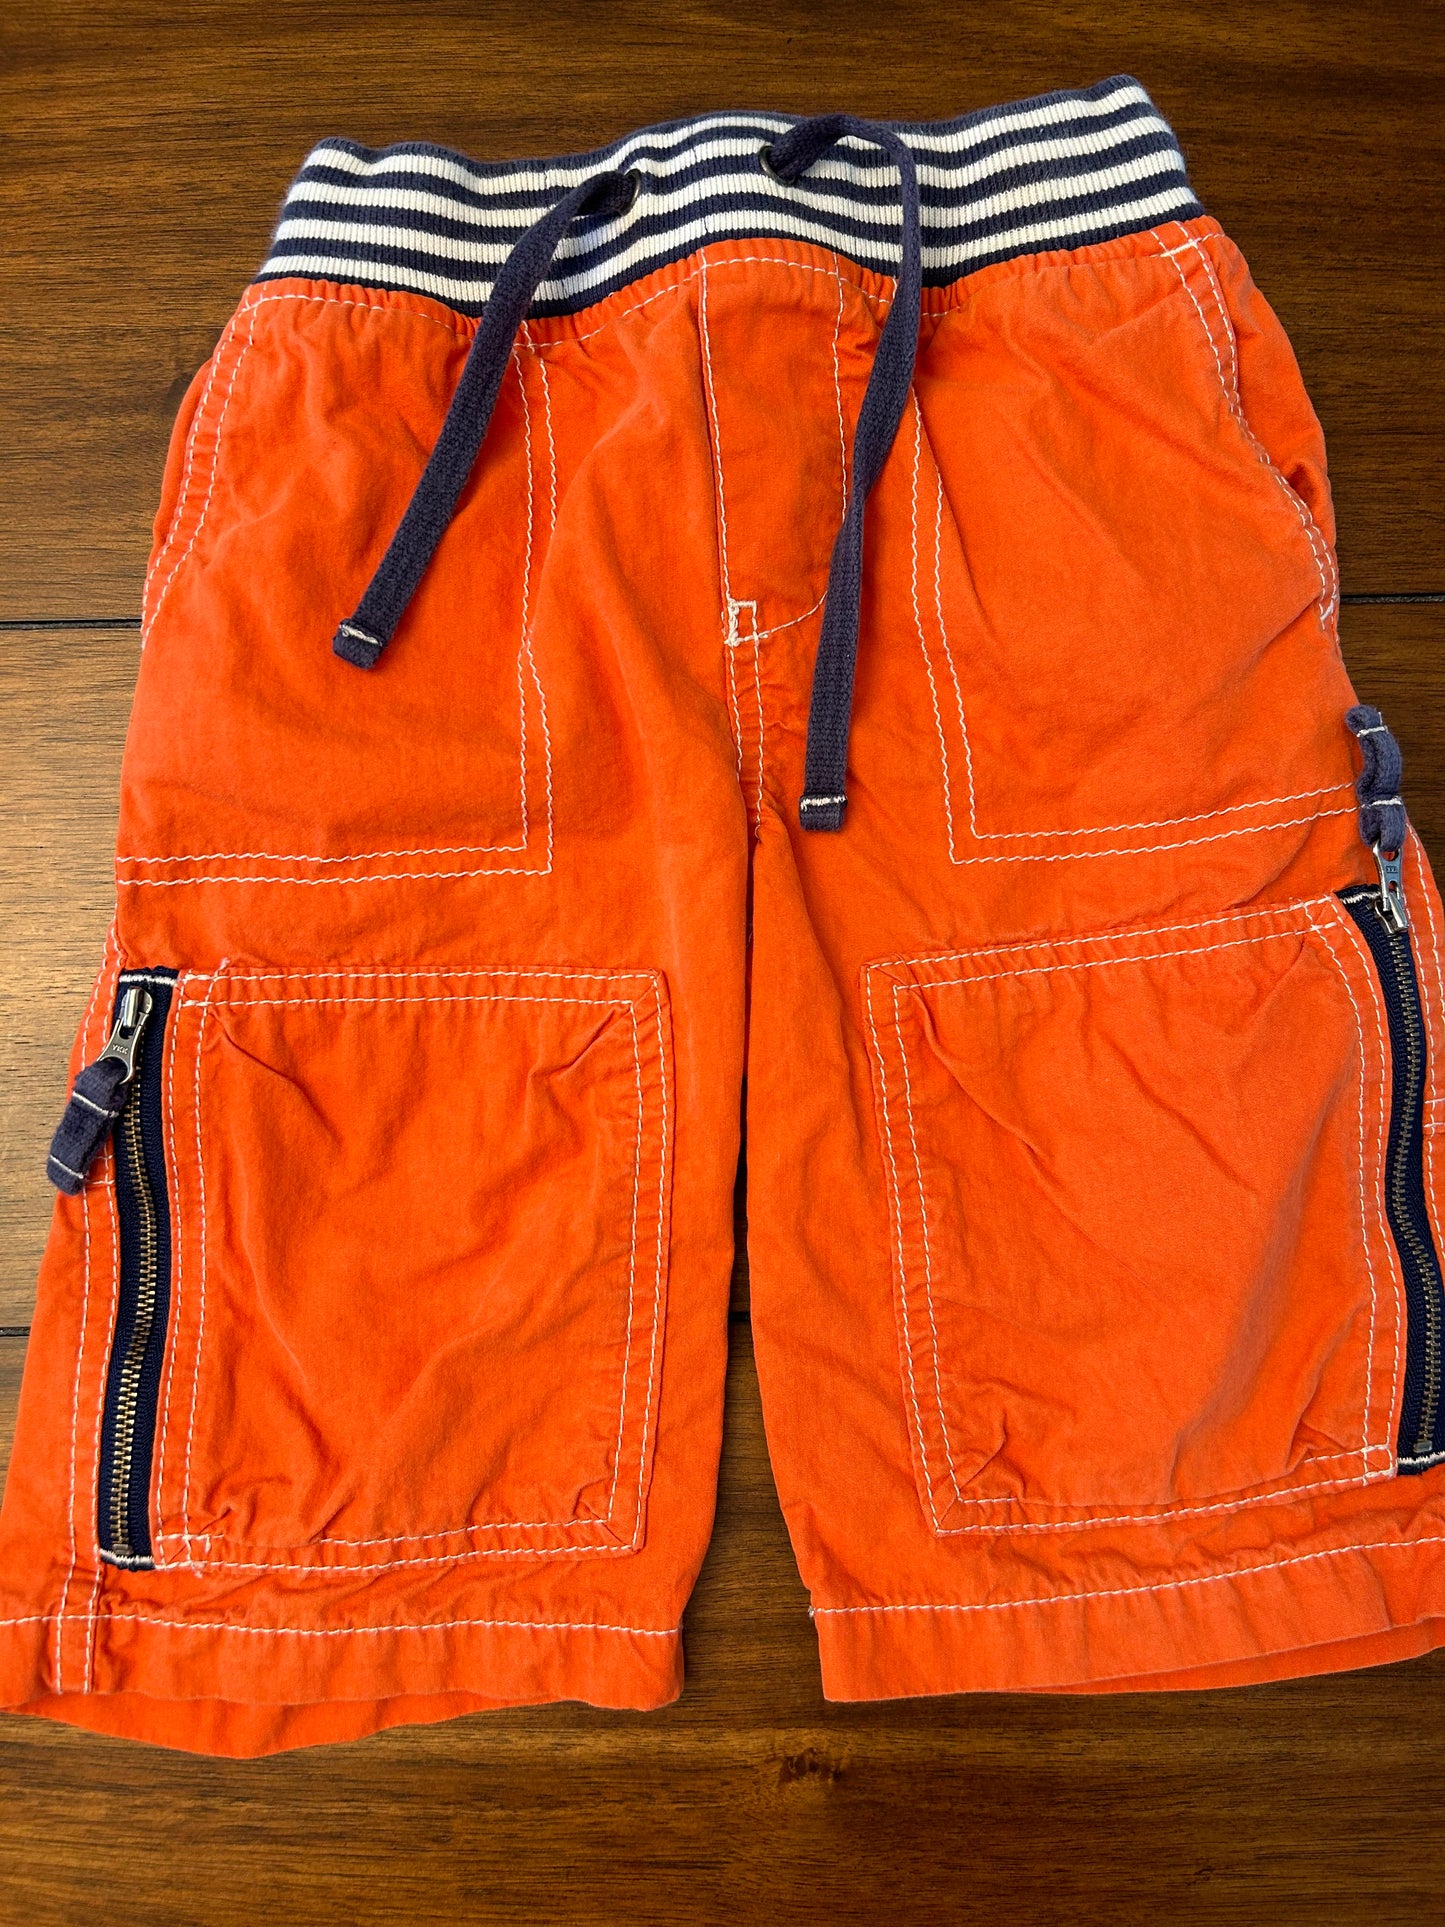 Mini Boden Boys Bright Orange Cargo Shorts	Size 4 PPU 45040